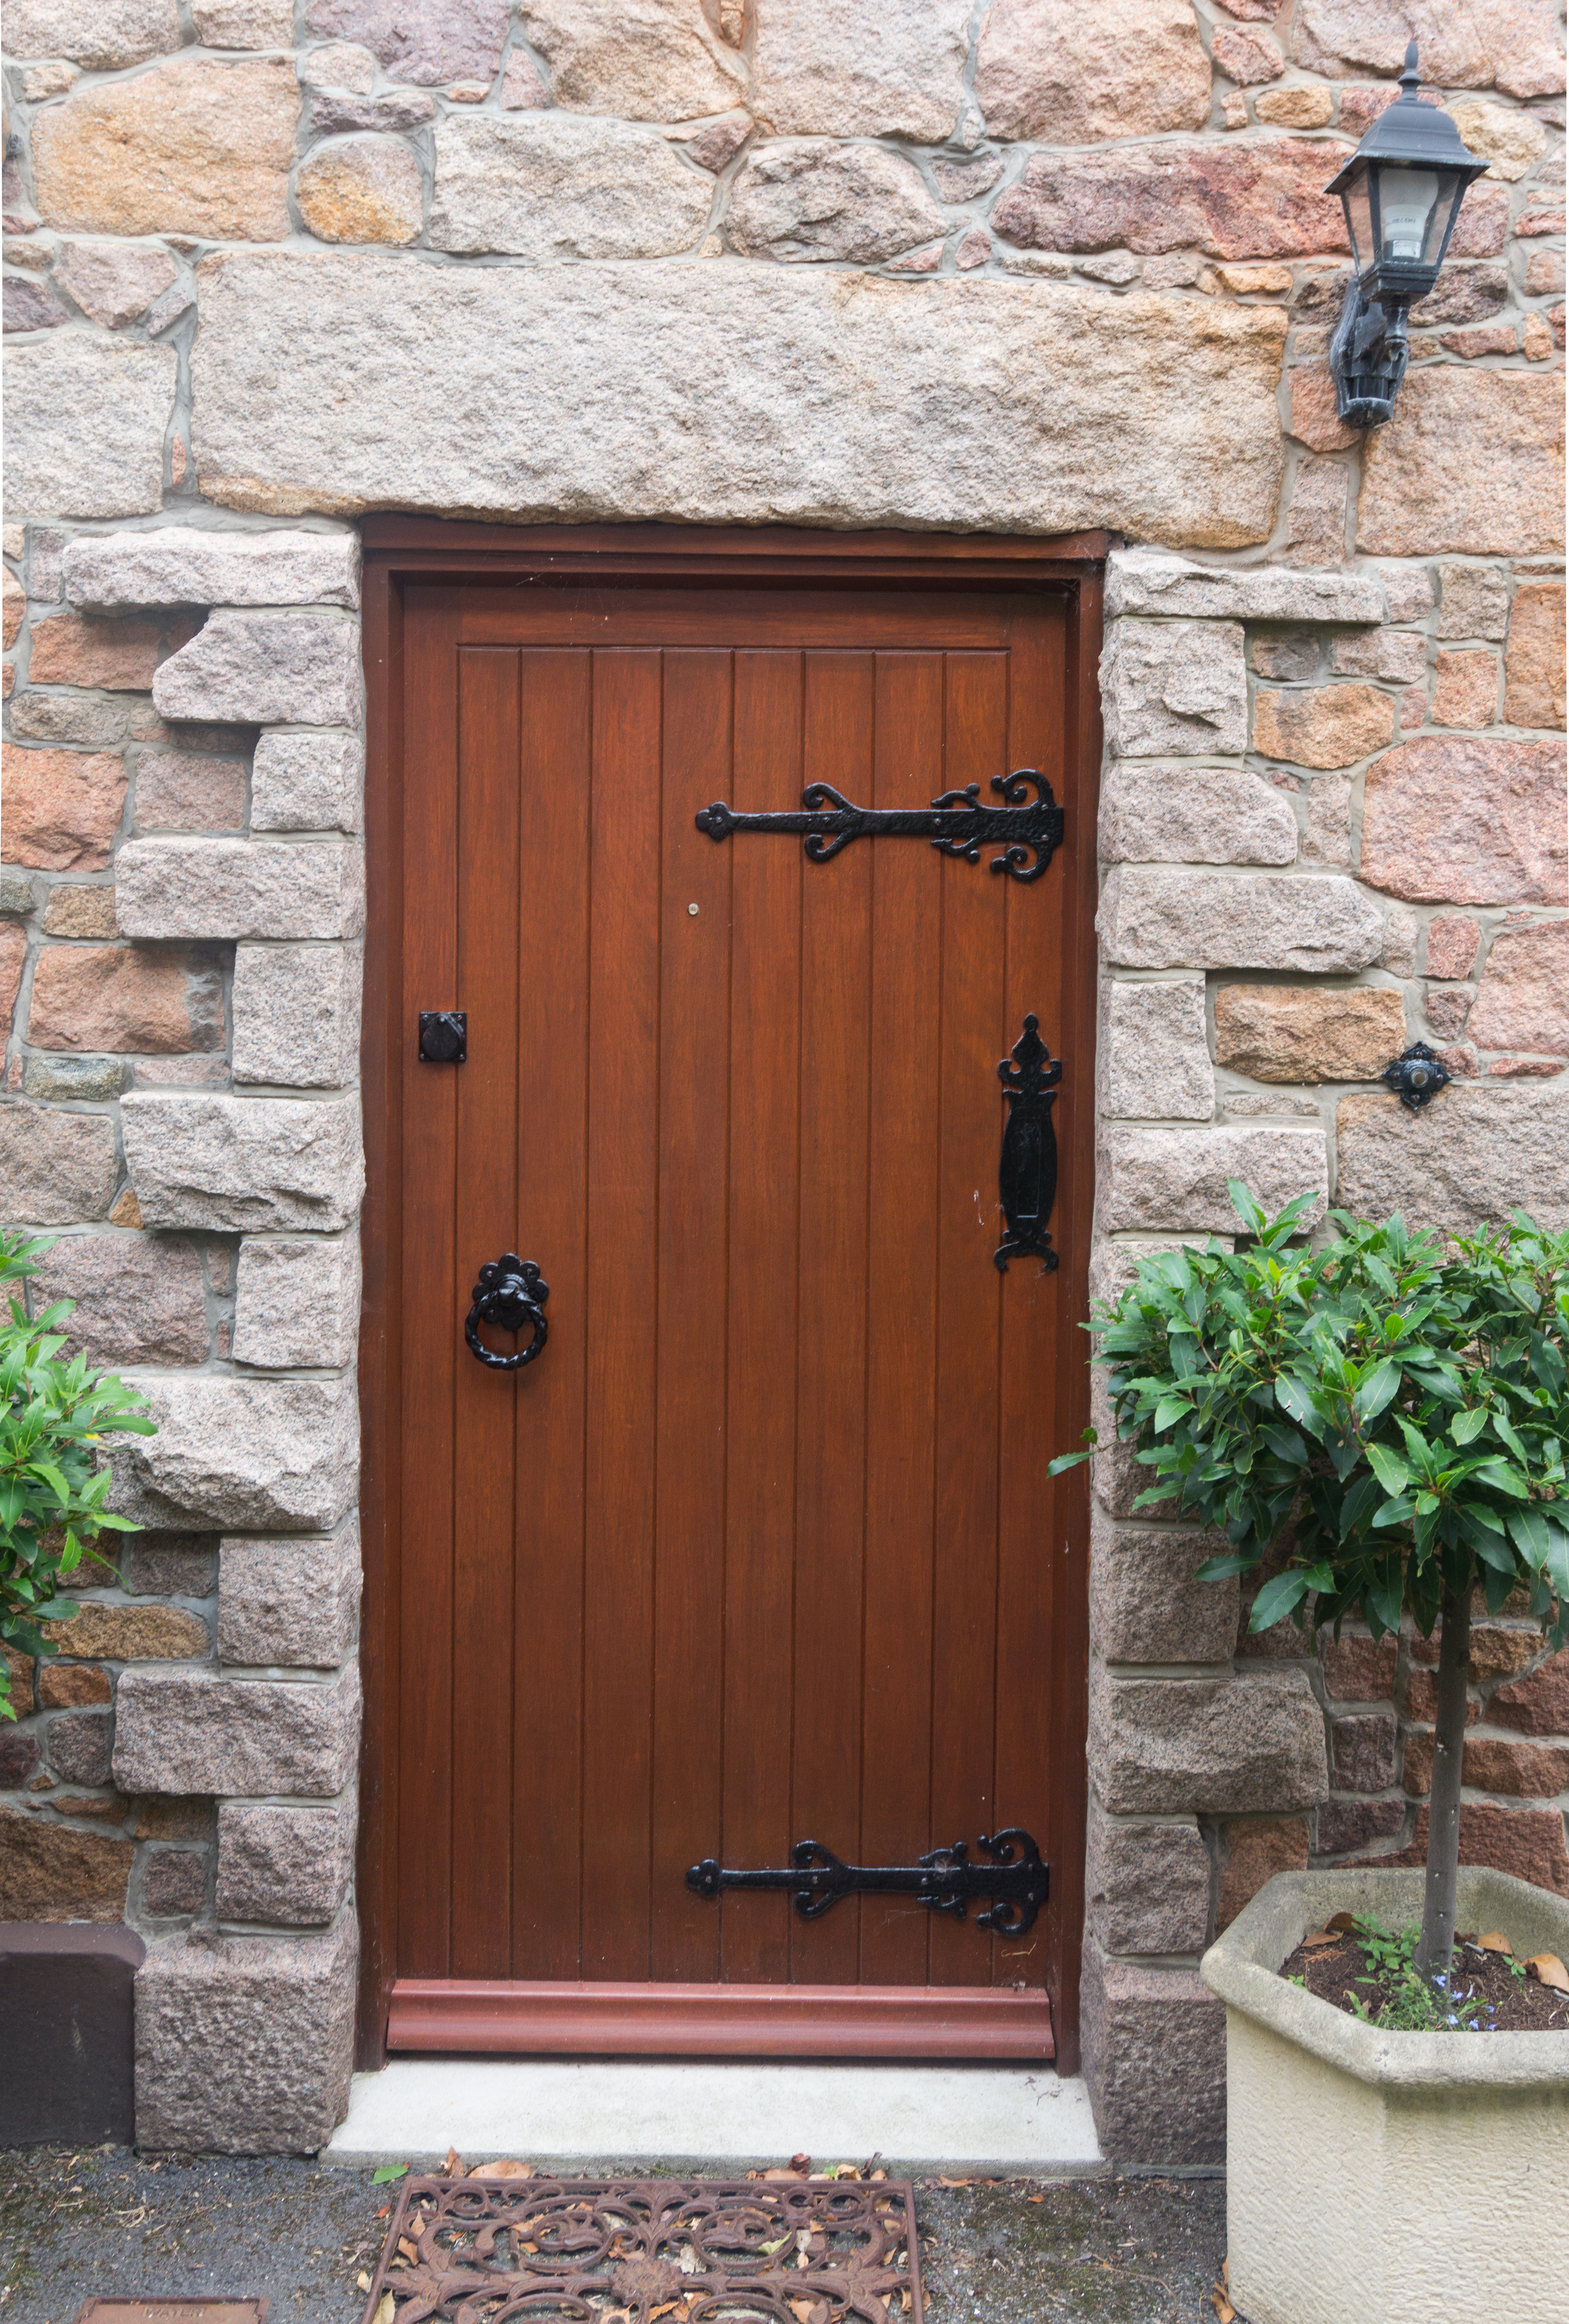 Old wooden door - Doors - Texturify - Free textures